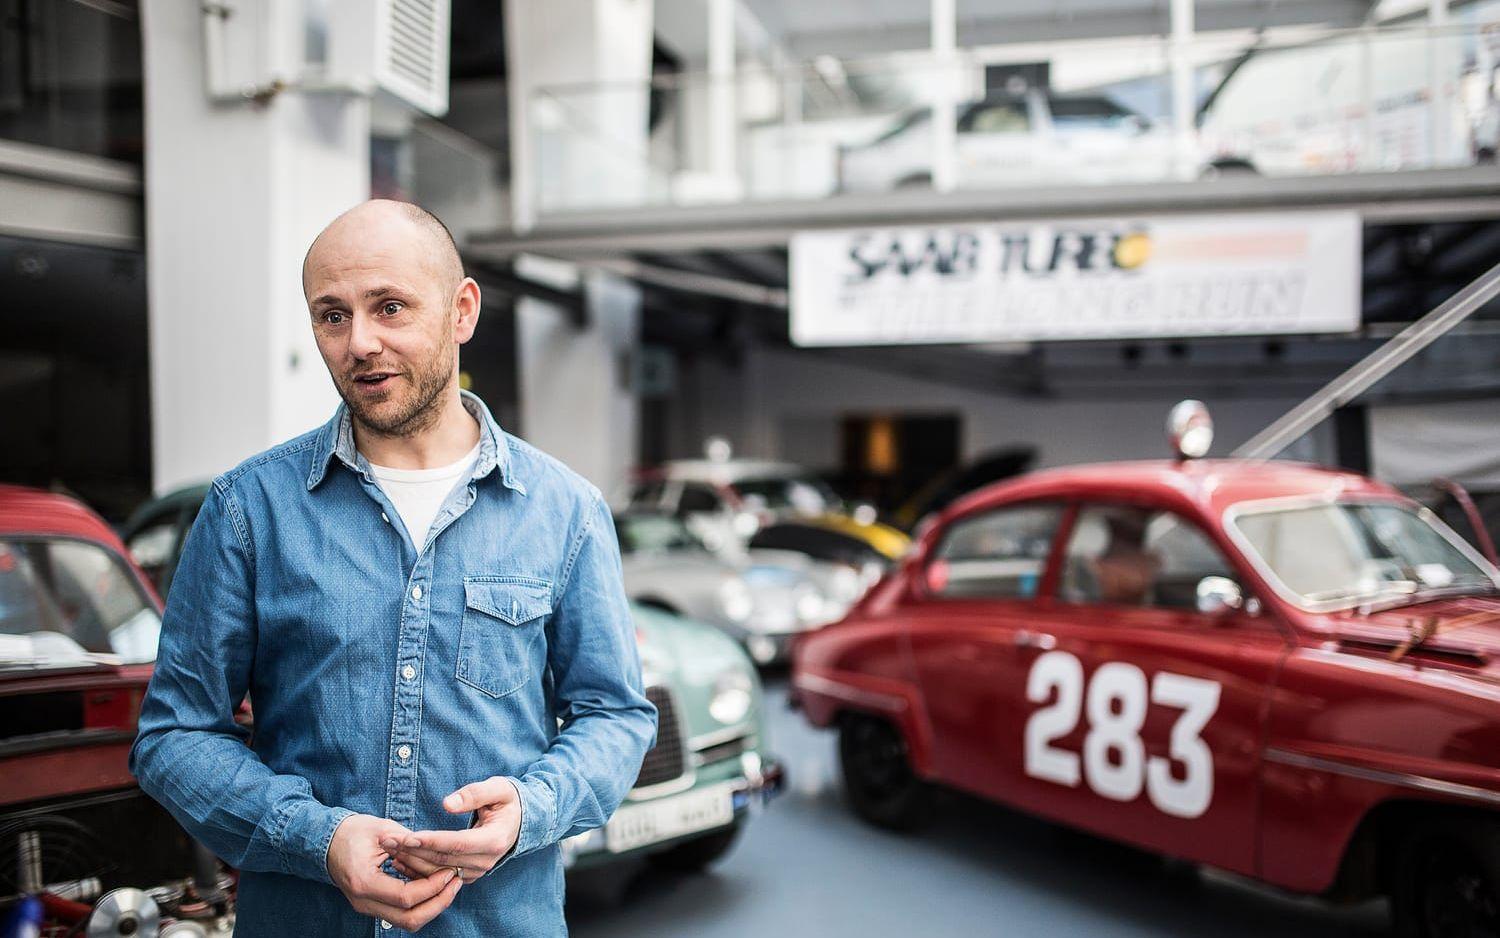 Niklas Anderssons pappa jobbade på Saab, så han har växt upp med bilmärket. Nu tycker han det är kul att få vara med och bidra i hyllningen vid 70-årsjubileet. Bild: Andreas Olsson